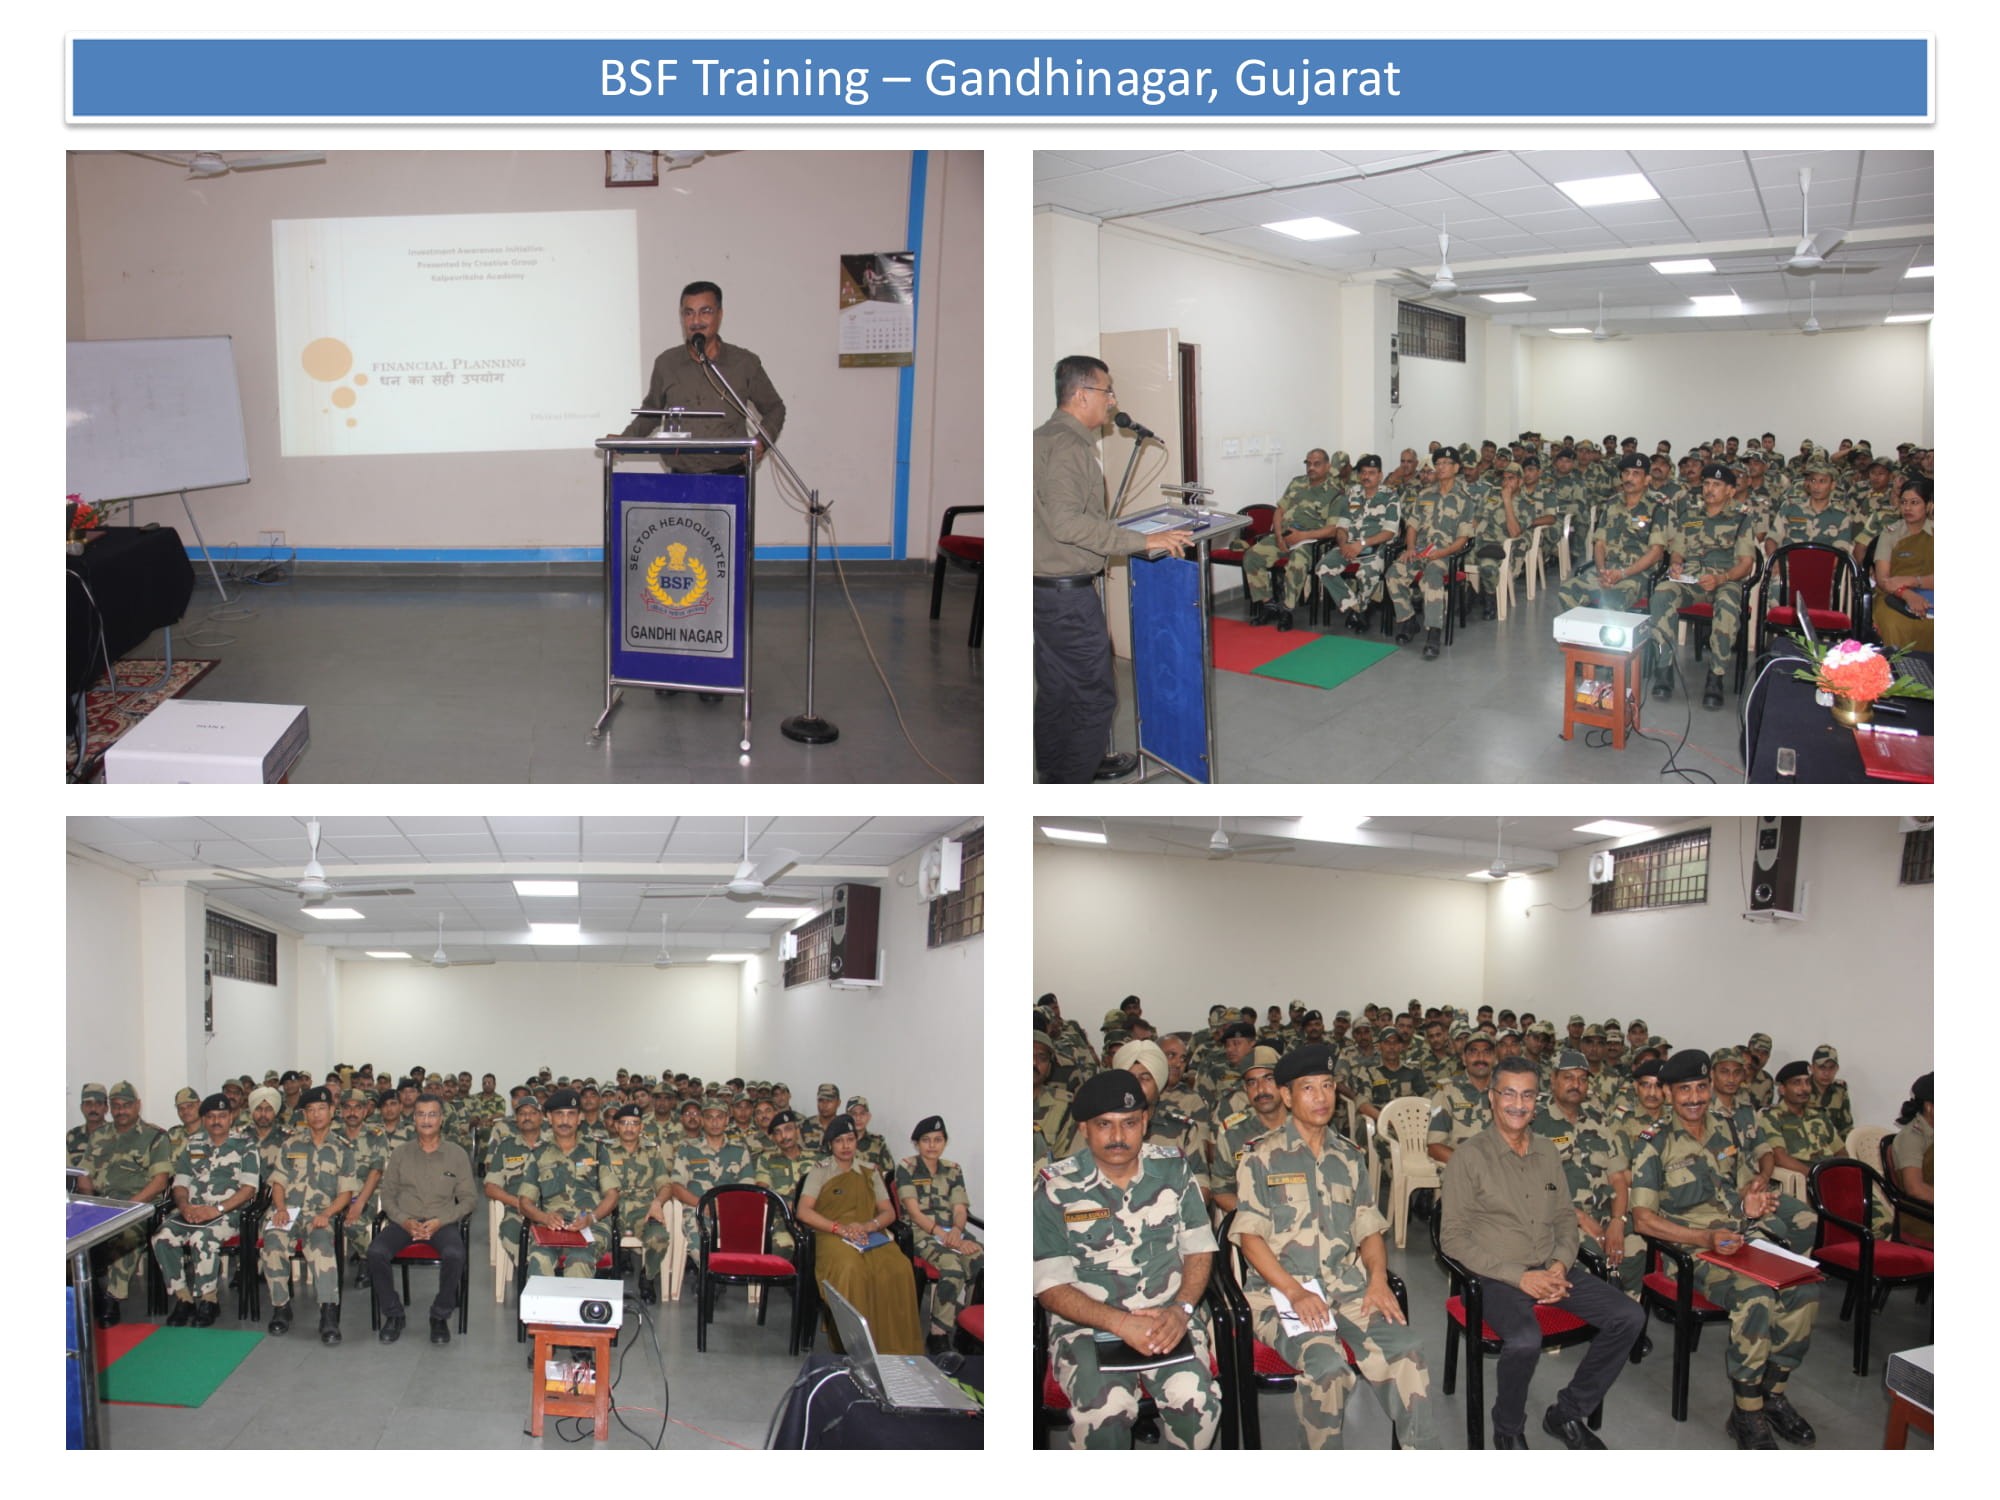 CGR Director addressing a BSF Batch at Gandhinagar, Gujarat-1